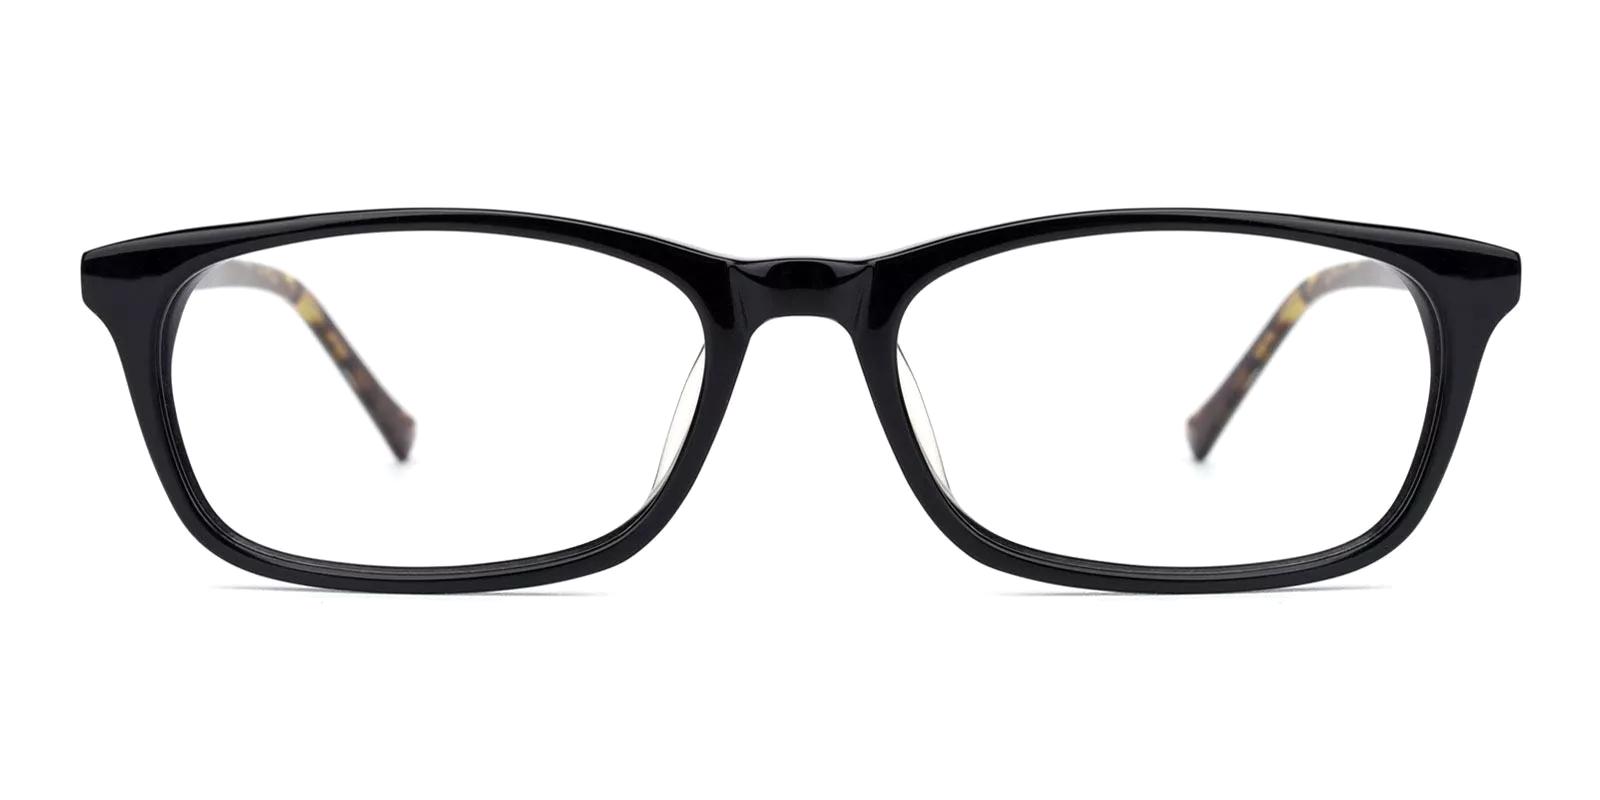 Malon Black Acetate Eyeglasses , UniversalBridgeFit Frames from ABBE Glasses